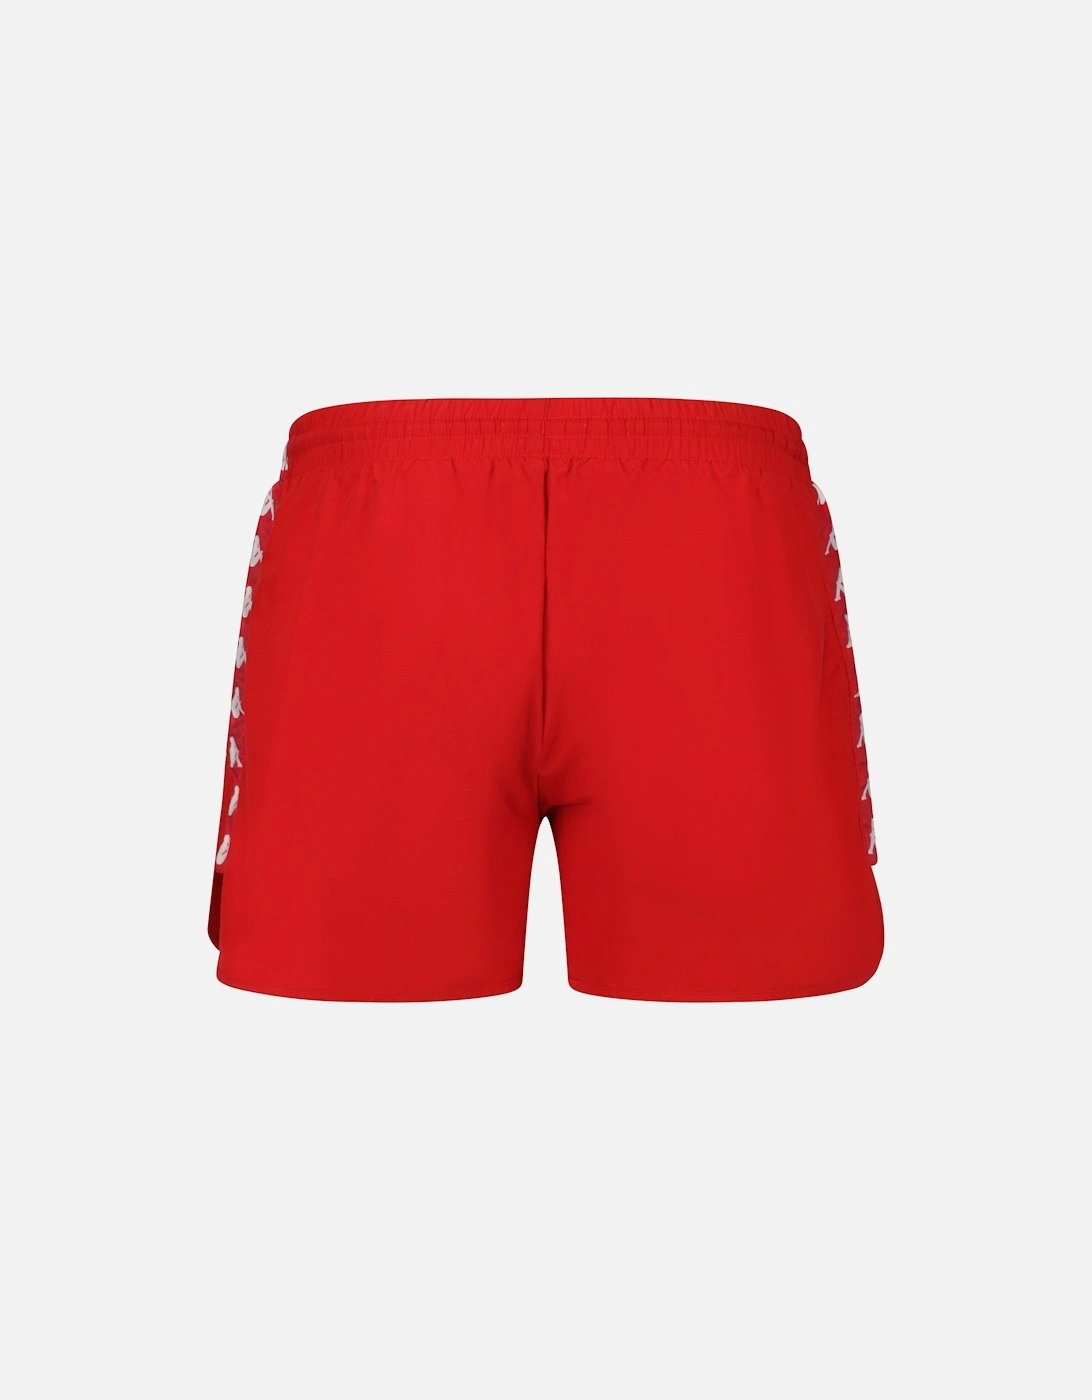 Banda Cali Swim Shorts | Red Blaze/Antique White